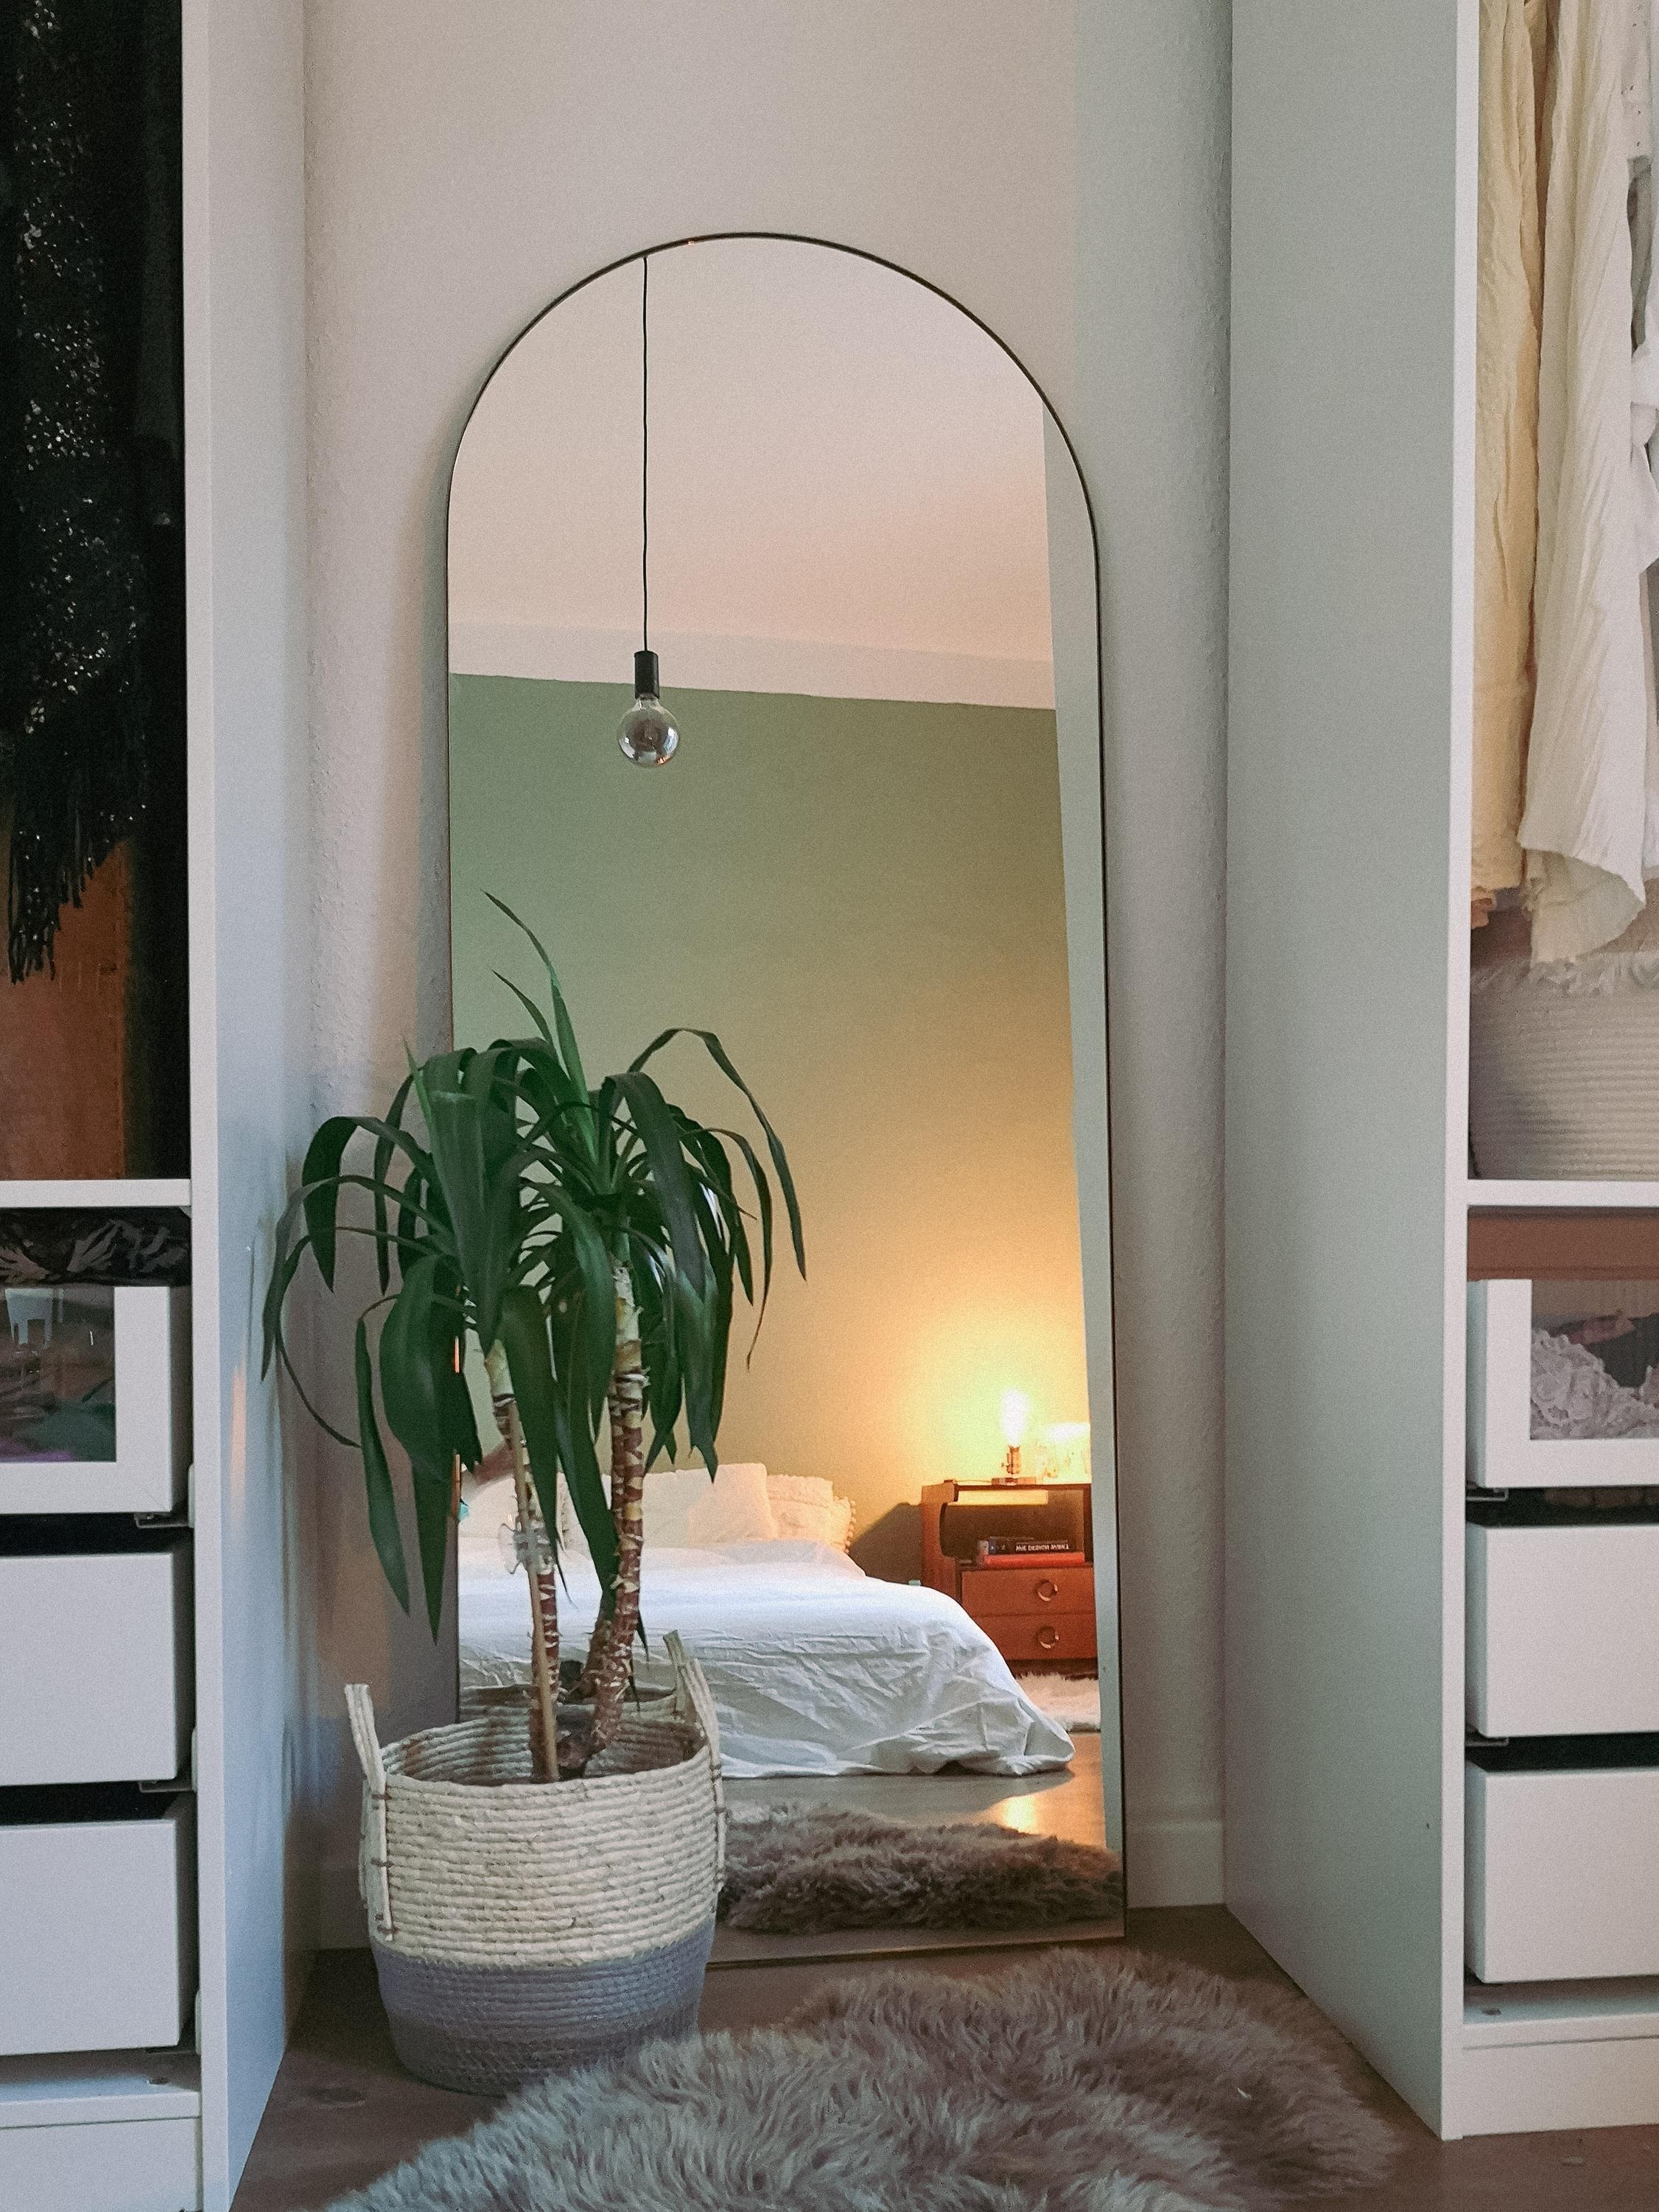 Sweet dreams. #horstdiy #bedroom #ichhabdiefarbeschön #mirror #plants #westwing 